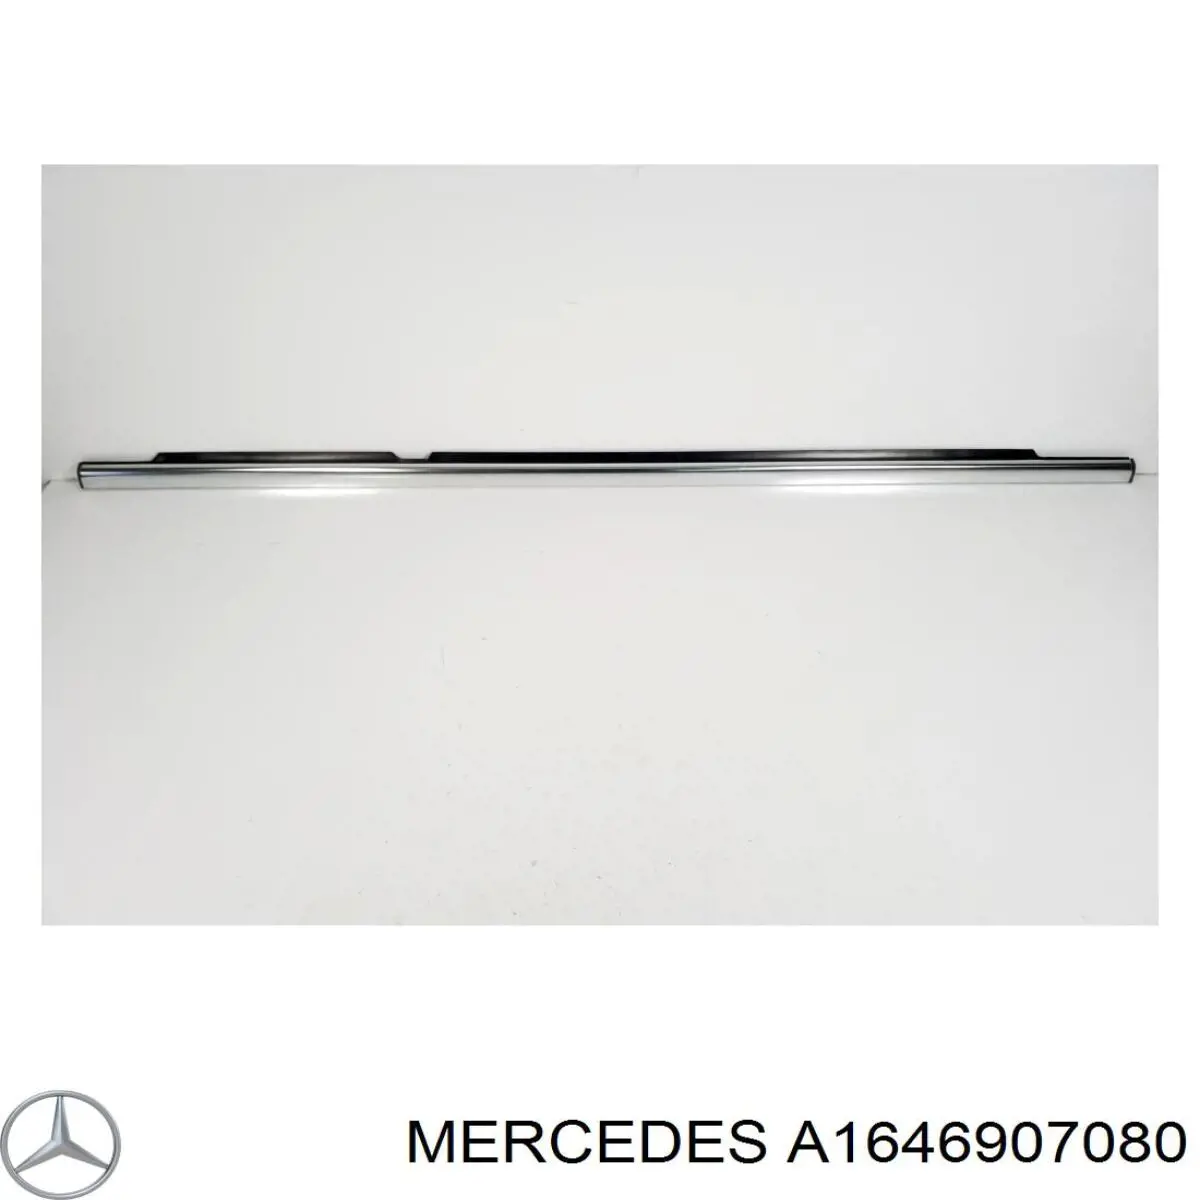 A1646907080 Mercedes уплотнитель стекла двери задней правой внешний (планка)